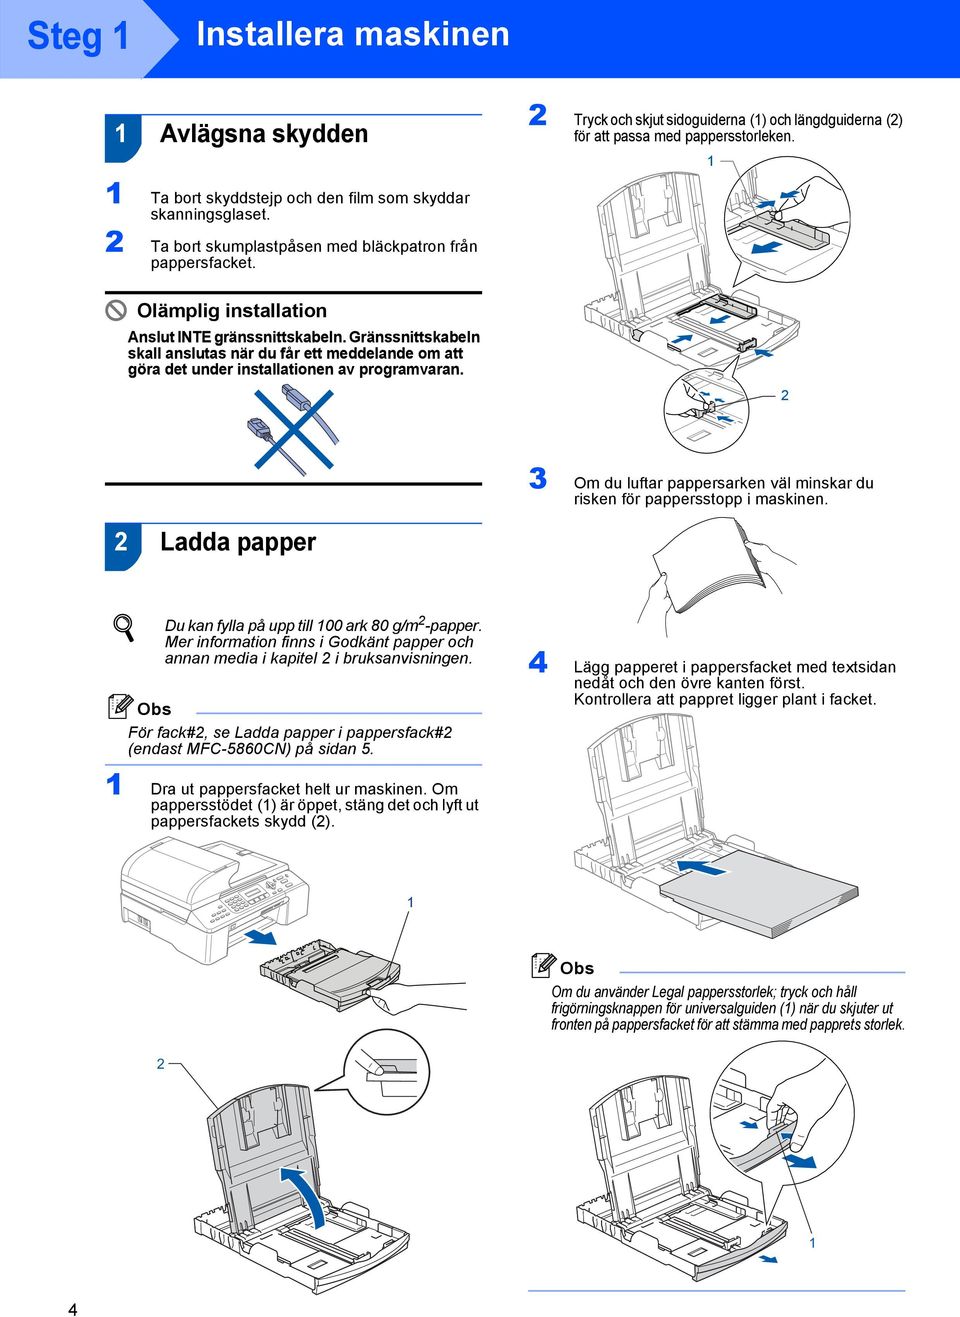 Gränssnittskabeln skall anslutas när du får ett meddelande om att göra det under installationen av programvaran. 2 3 Om du luftar pappersarken väl minskar du risken för pappersstopp i maskinen.